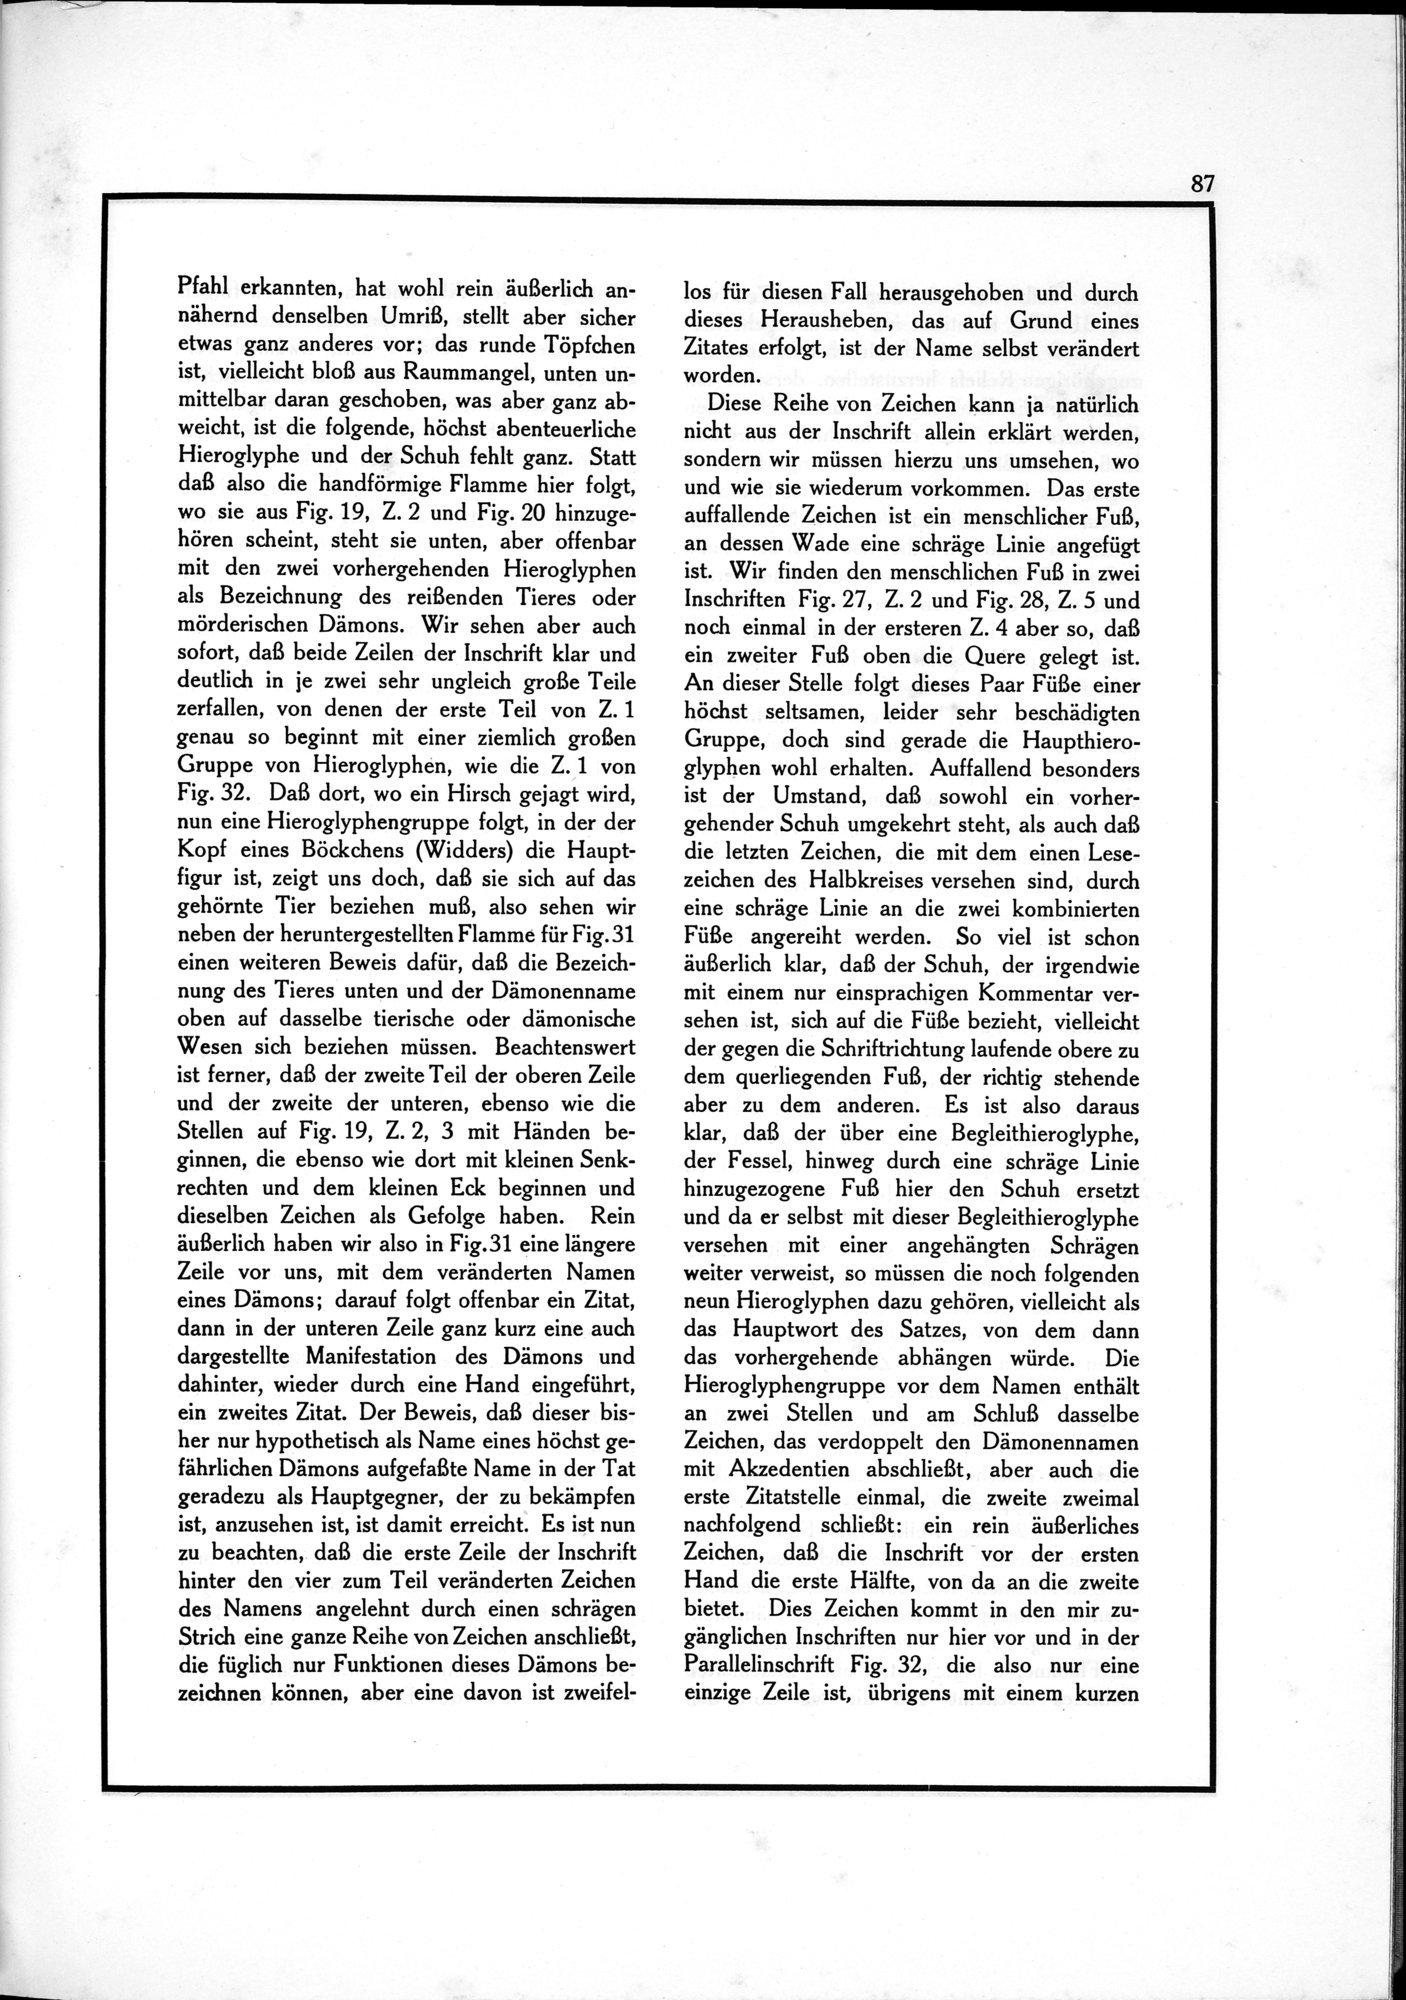 Die Teufel des Avesta und Ihre Beziehungen zur Ikonographie des Buddhismus Zentral-Asiens : vol.1 / Page 91 (Grayscale High Resolution Image)